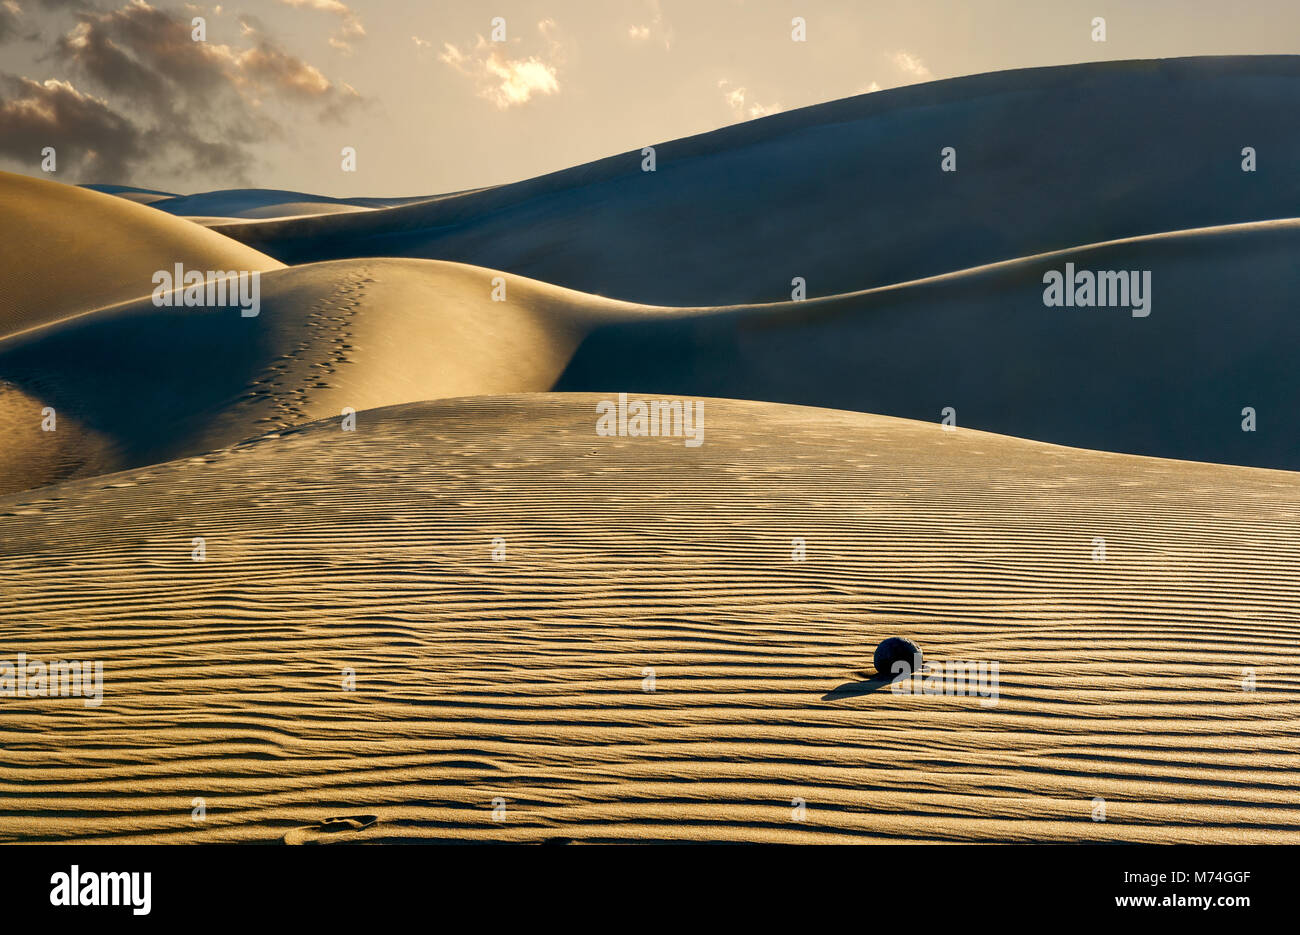 Sanddünen im berühmten natürlichen Strand von Maspalomas. Gran Canaria, Kanarische Inseln, Spanien Stockfoto